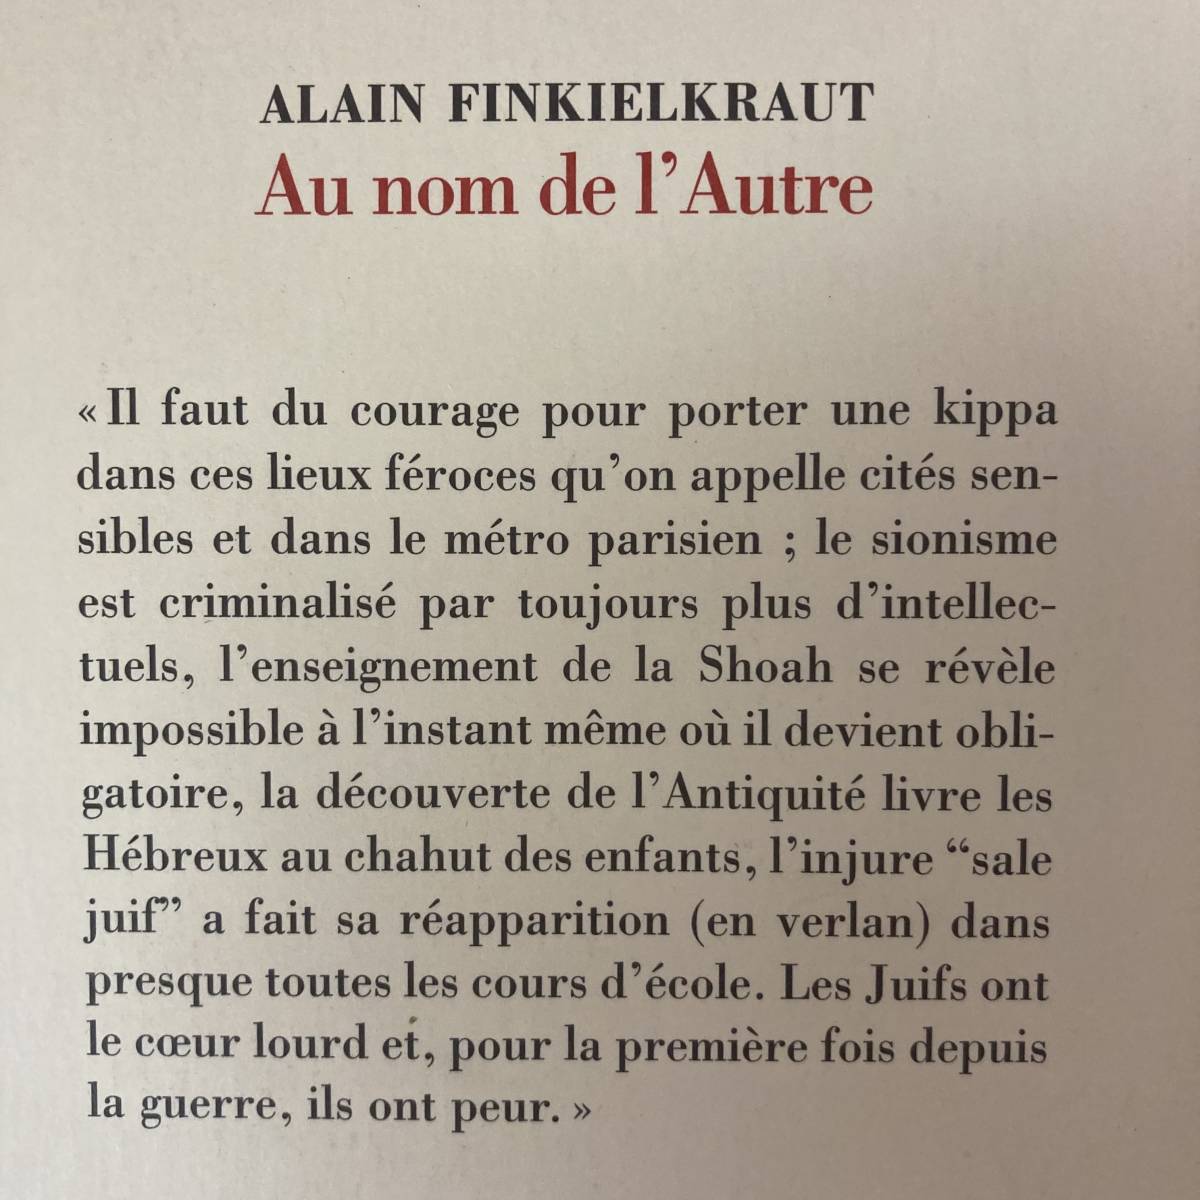 【仏語洋書】Au nom de l’Autre / アラン・フィンケルクロート Alain Finkielkraut（著）【反ユダヤ主義】_画像2